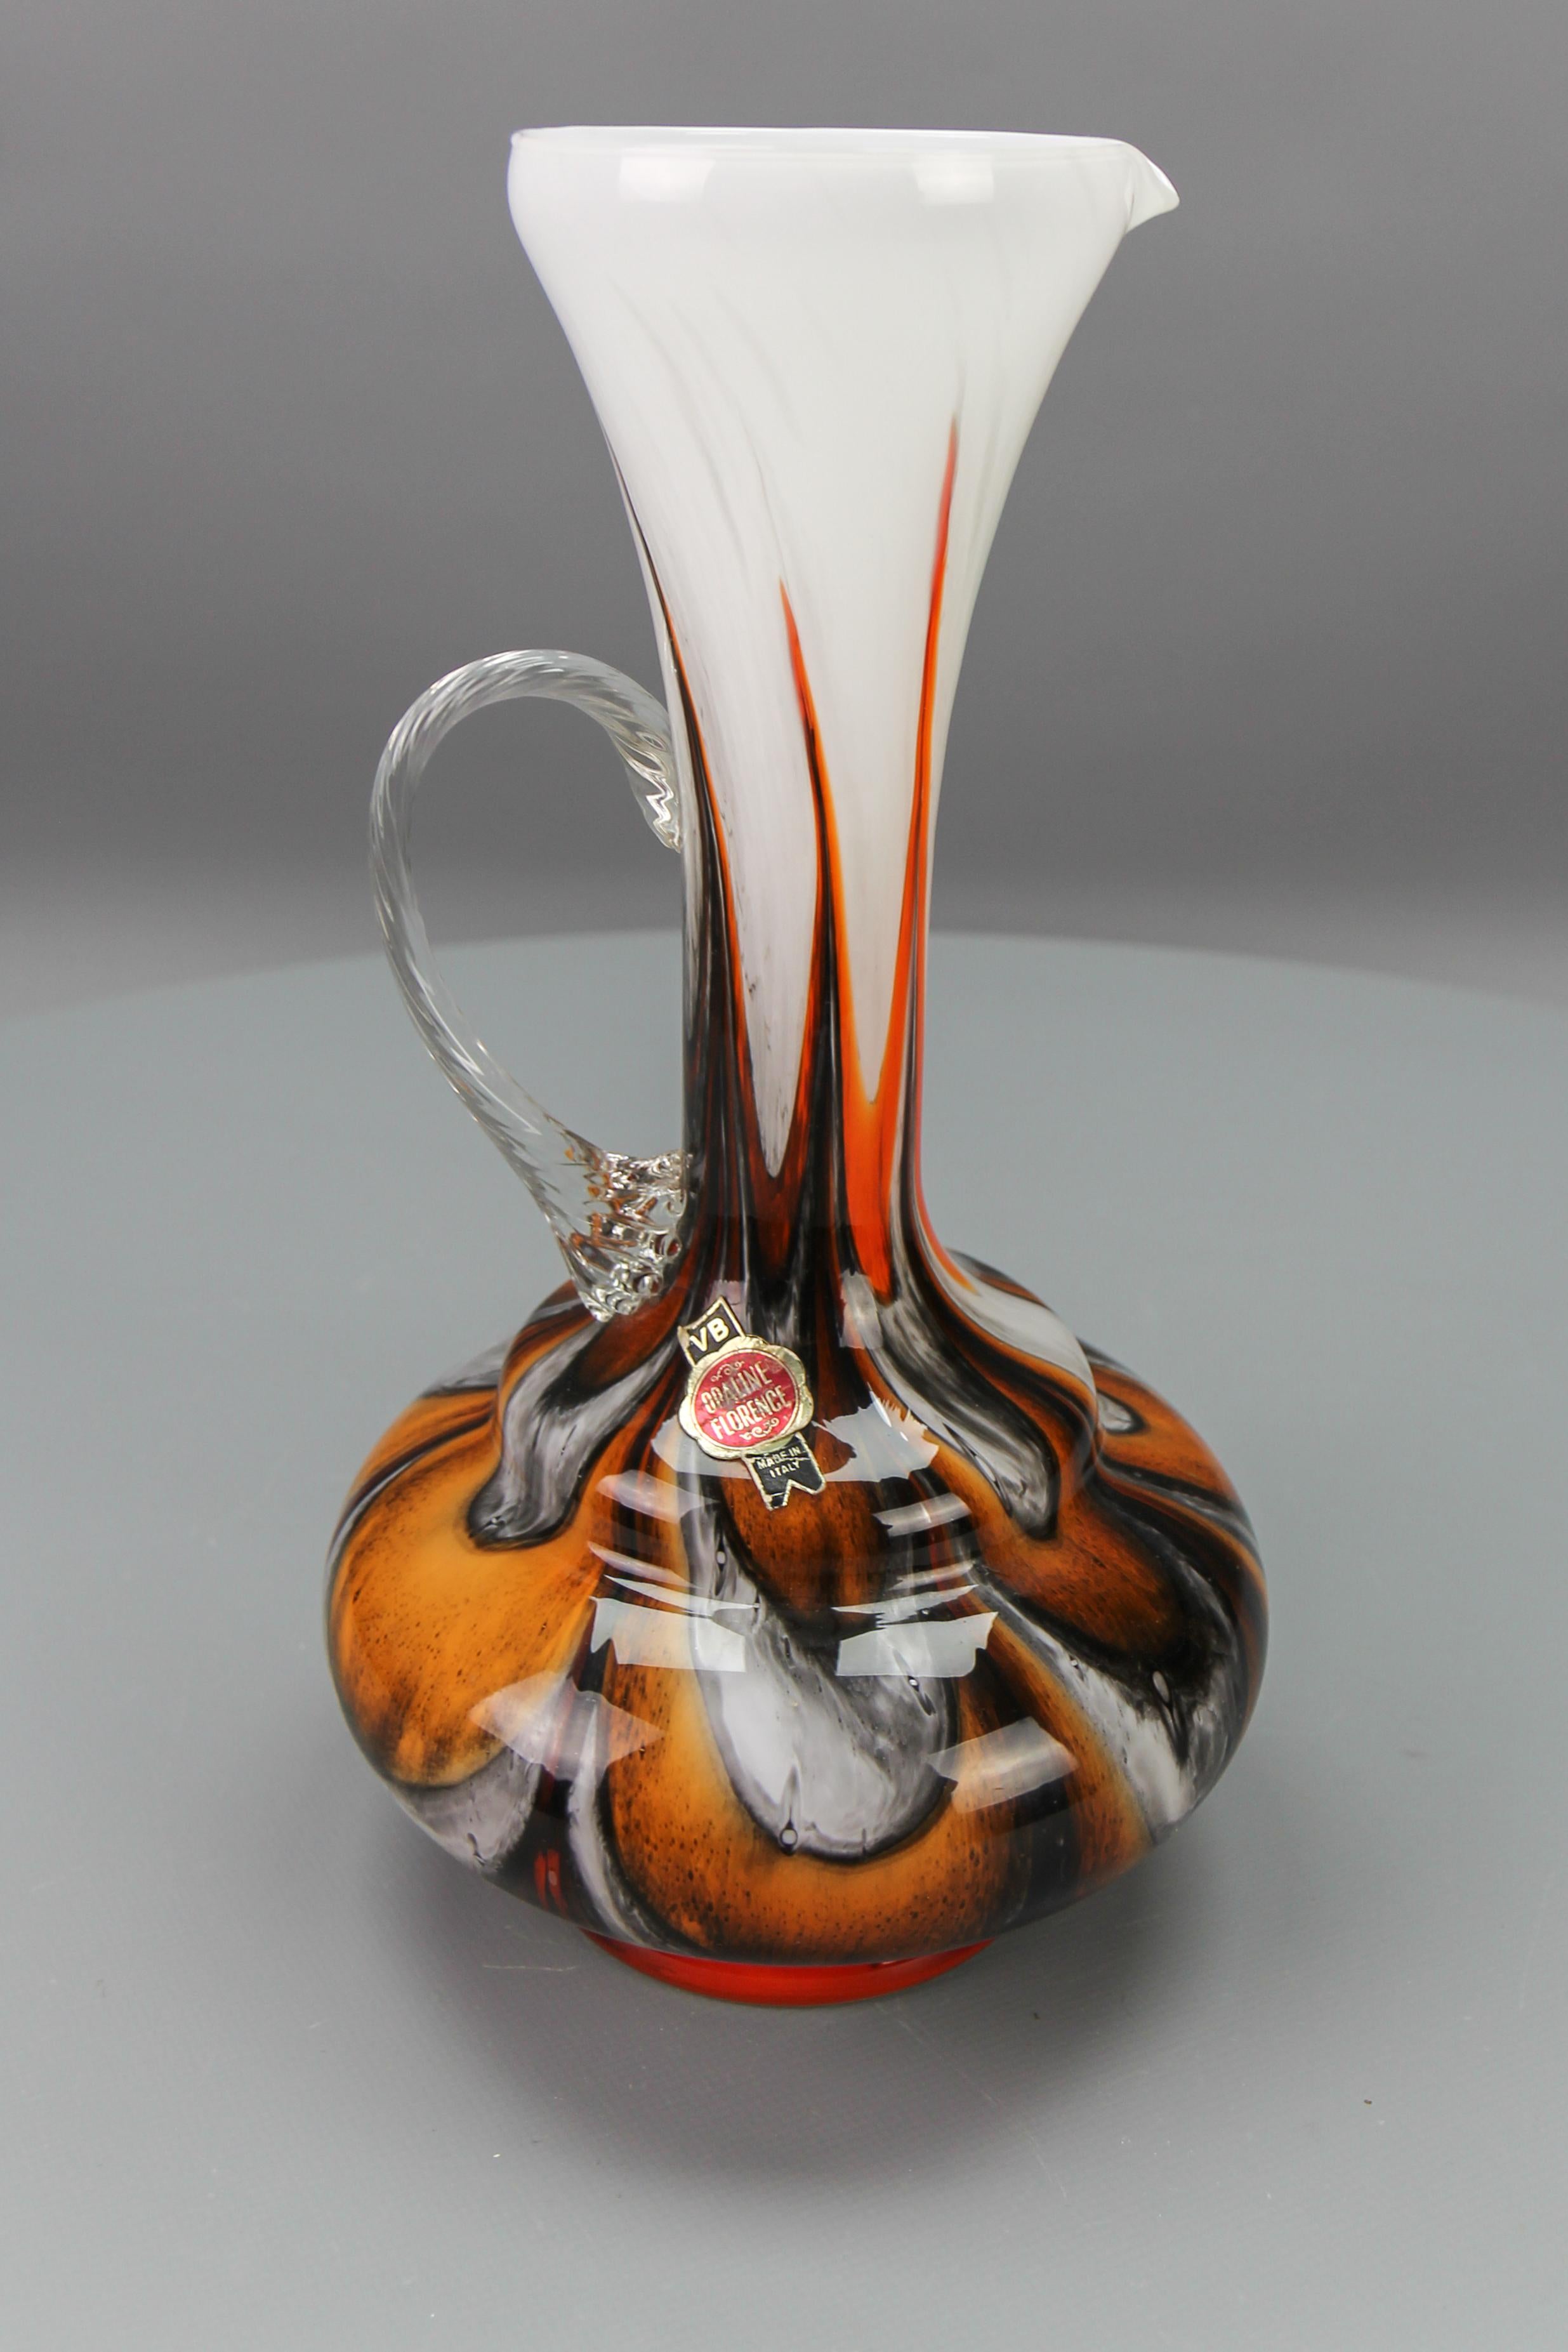 Italienische Vase aus Opalglas Florenz in Weiß, Braun, Orange und Rot von Vetreria Barbieri, um die 1970er Jahre.
Eine schöne polychrom braun, orange, rot, weiß und grau marmorierte Vase, Krug oder Kanne mit Klarglashenkel, hergestellt in der Region